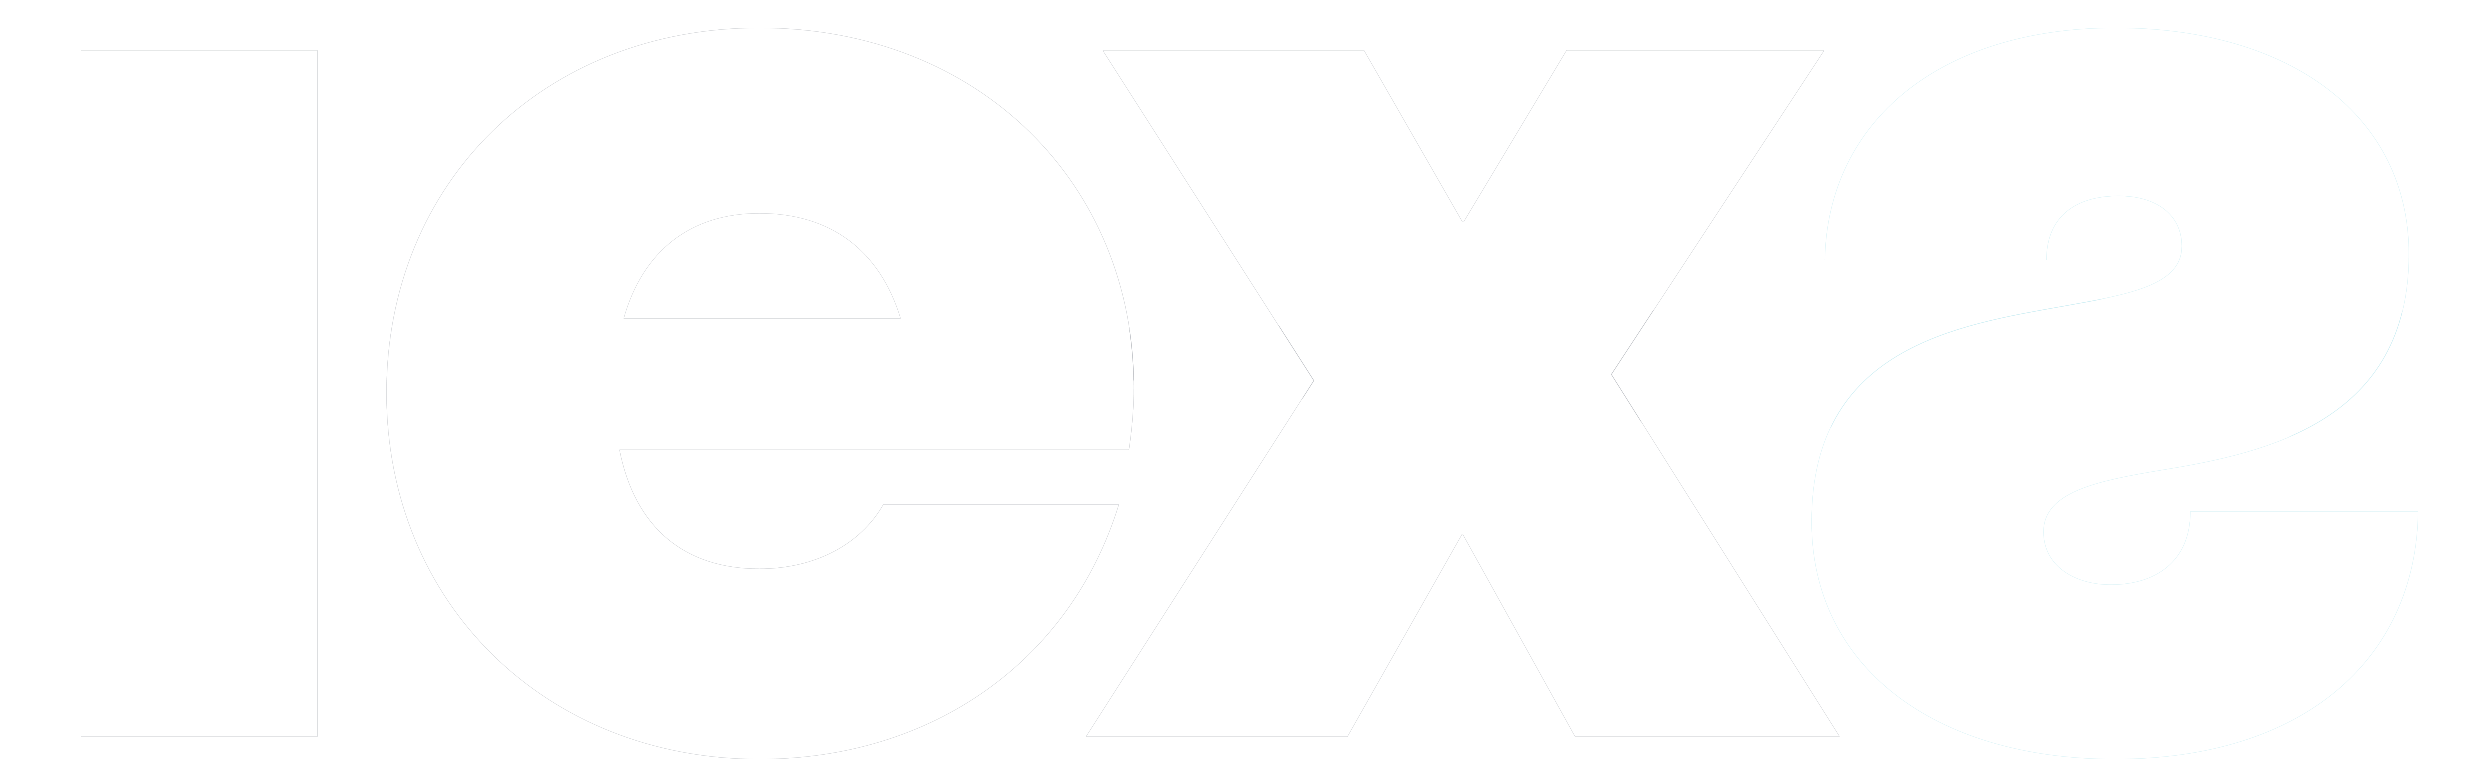 IEXS Chile